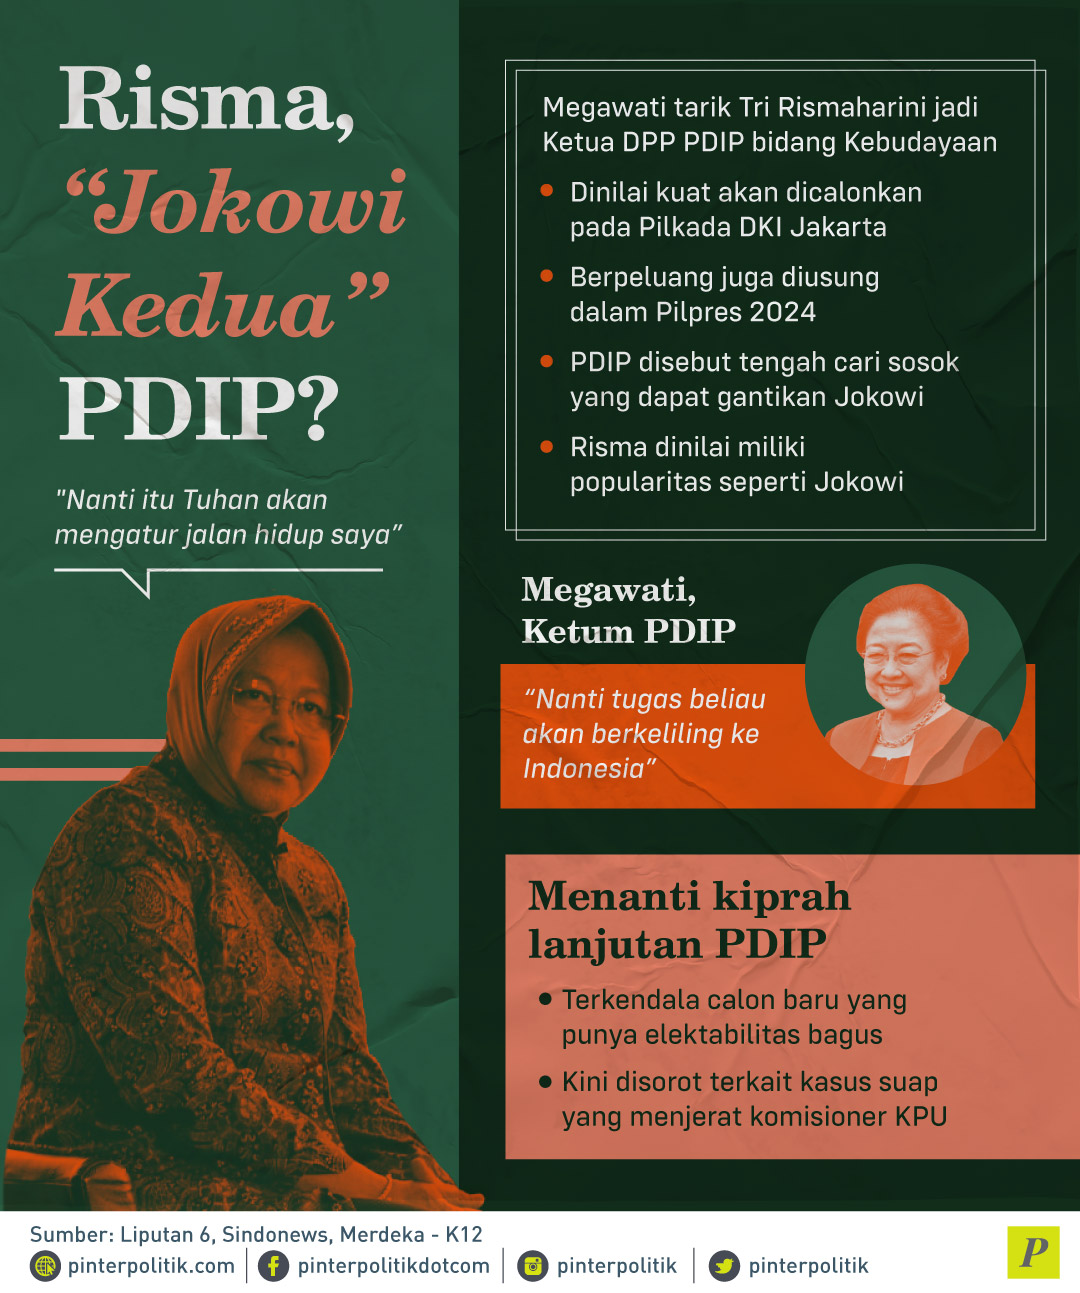 Megawati tarik Tri Rismaharini jadi Ketua DPP PDIP